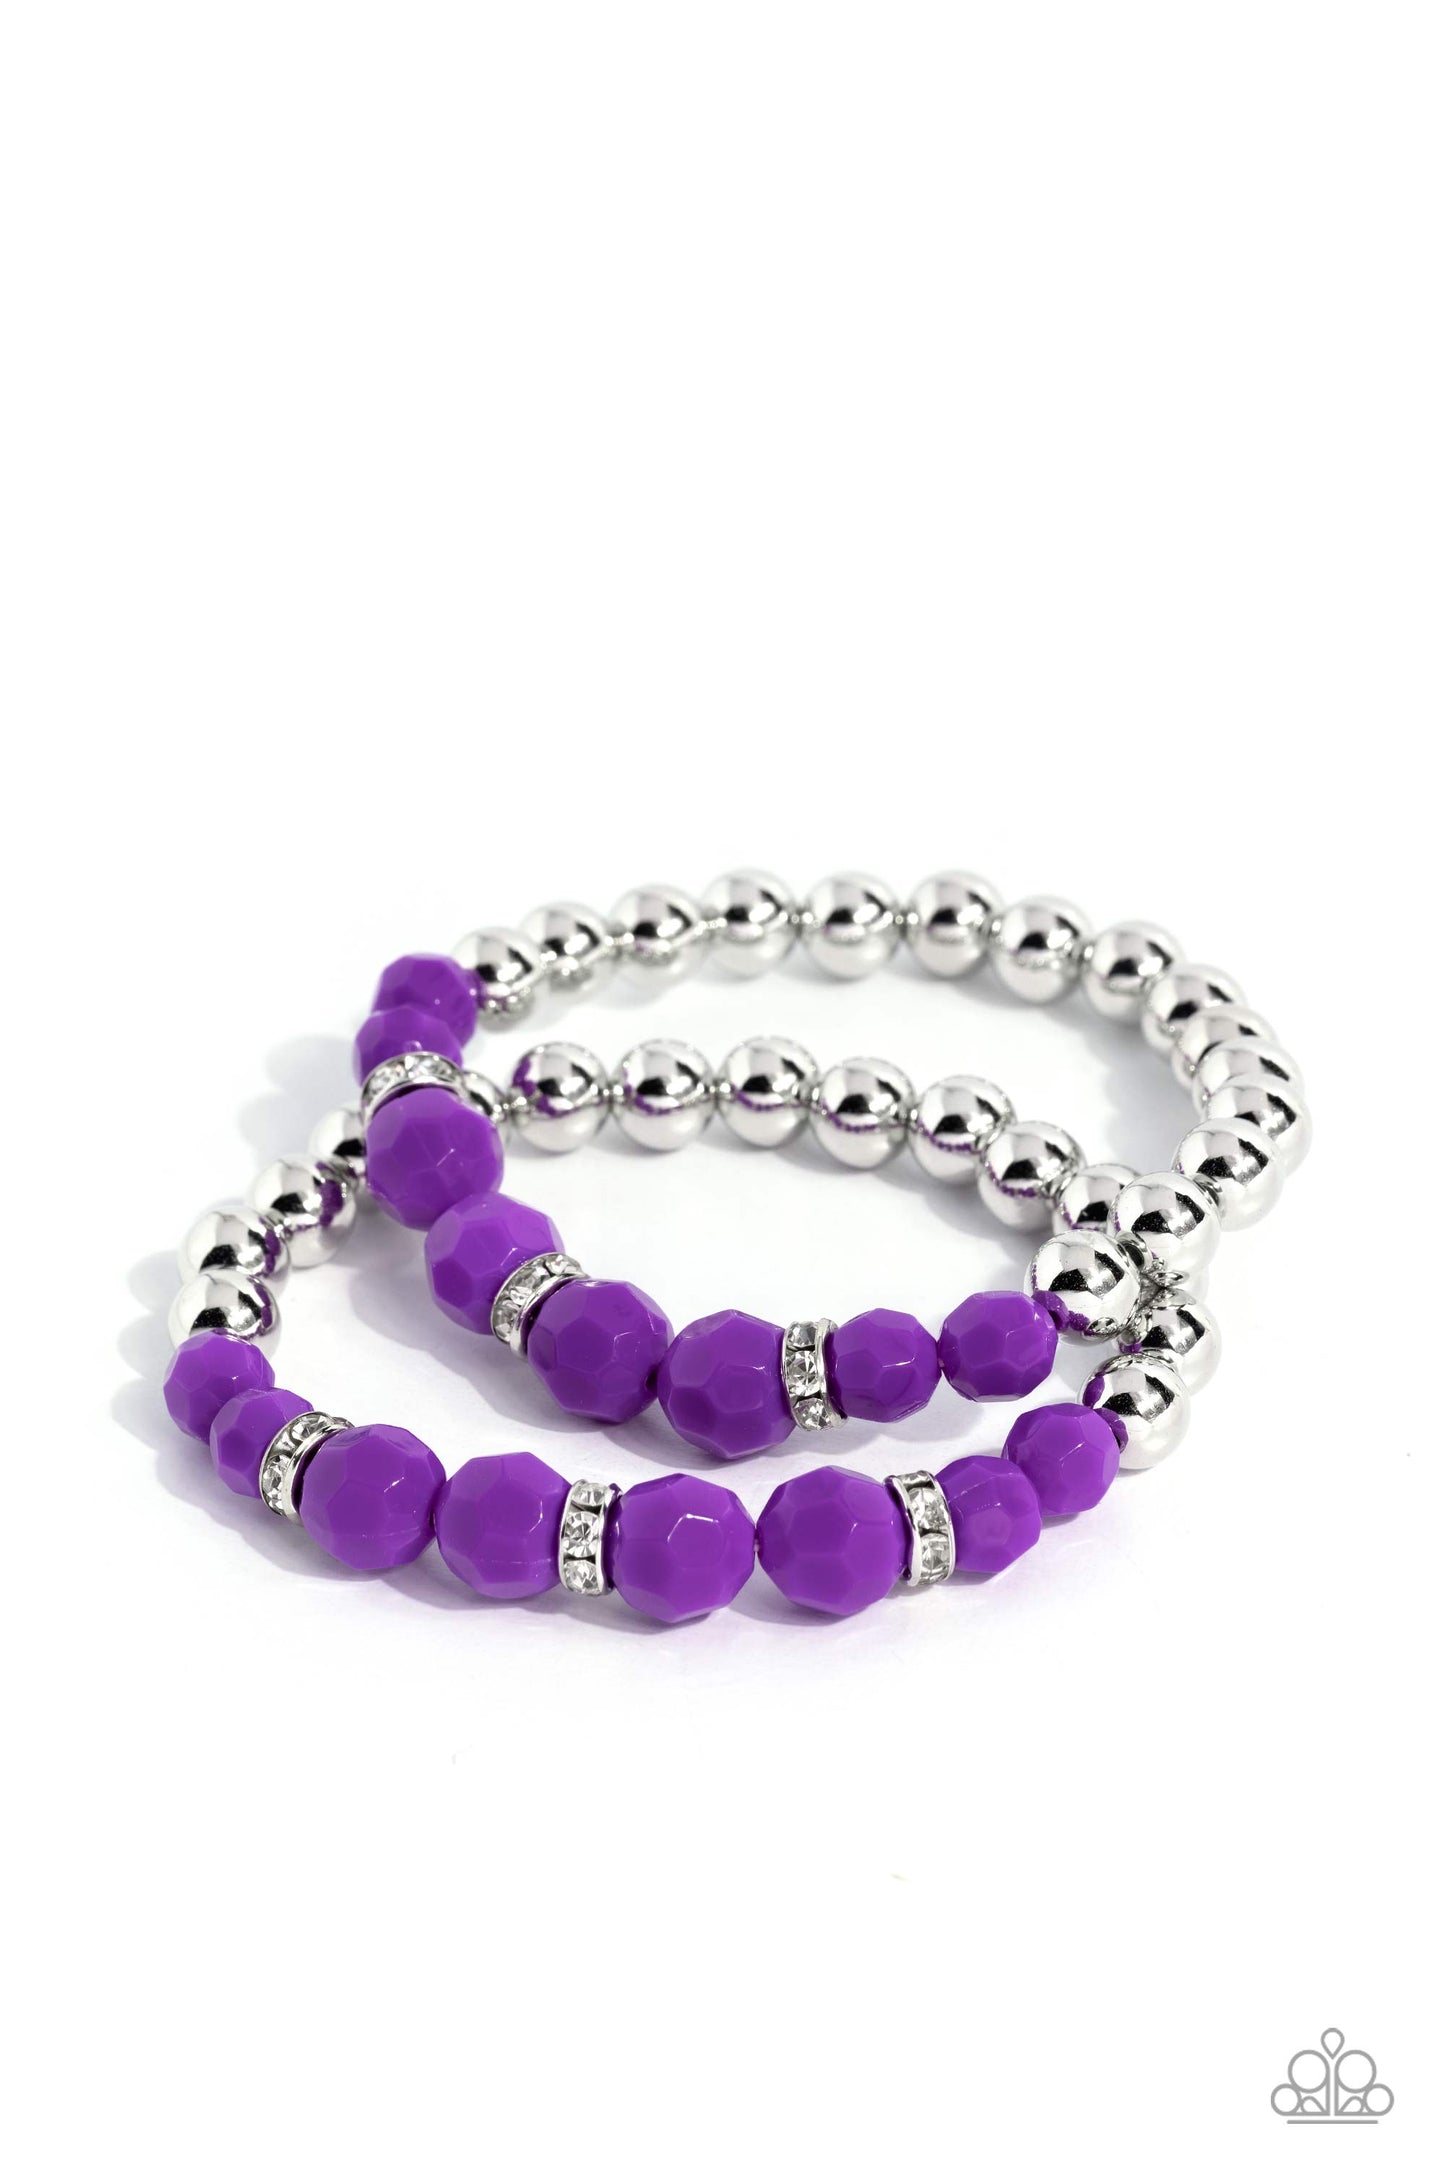 Paparazzi Bracelets - Two by Two Twinkle - Purple